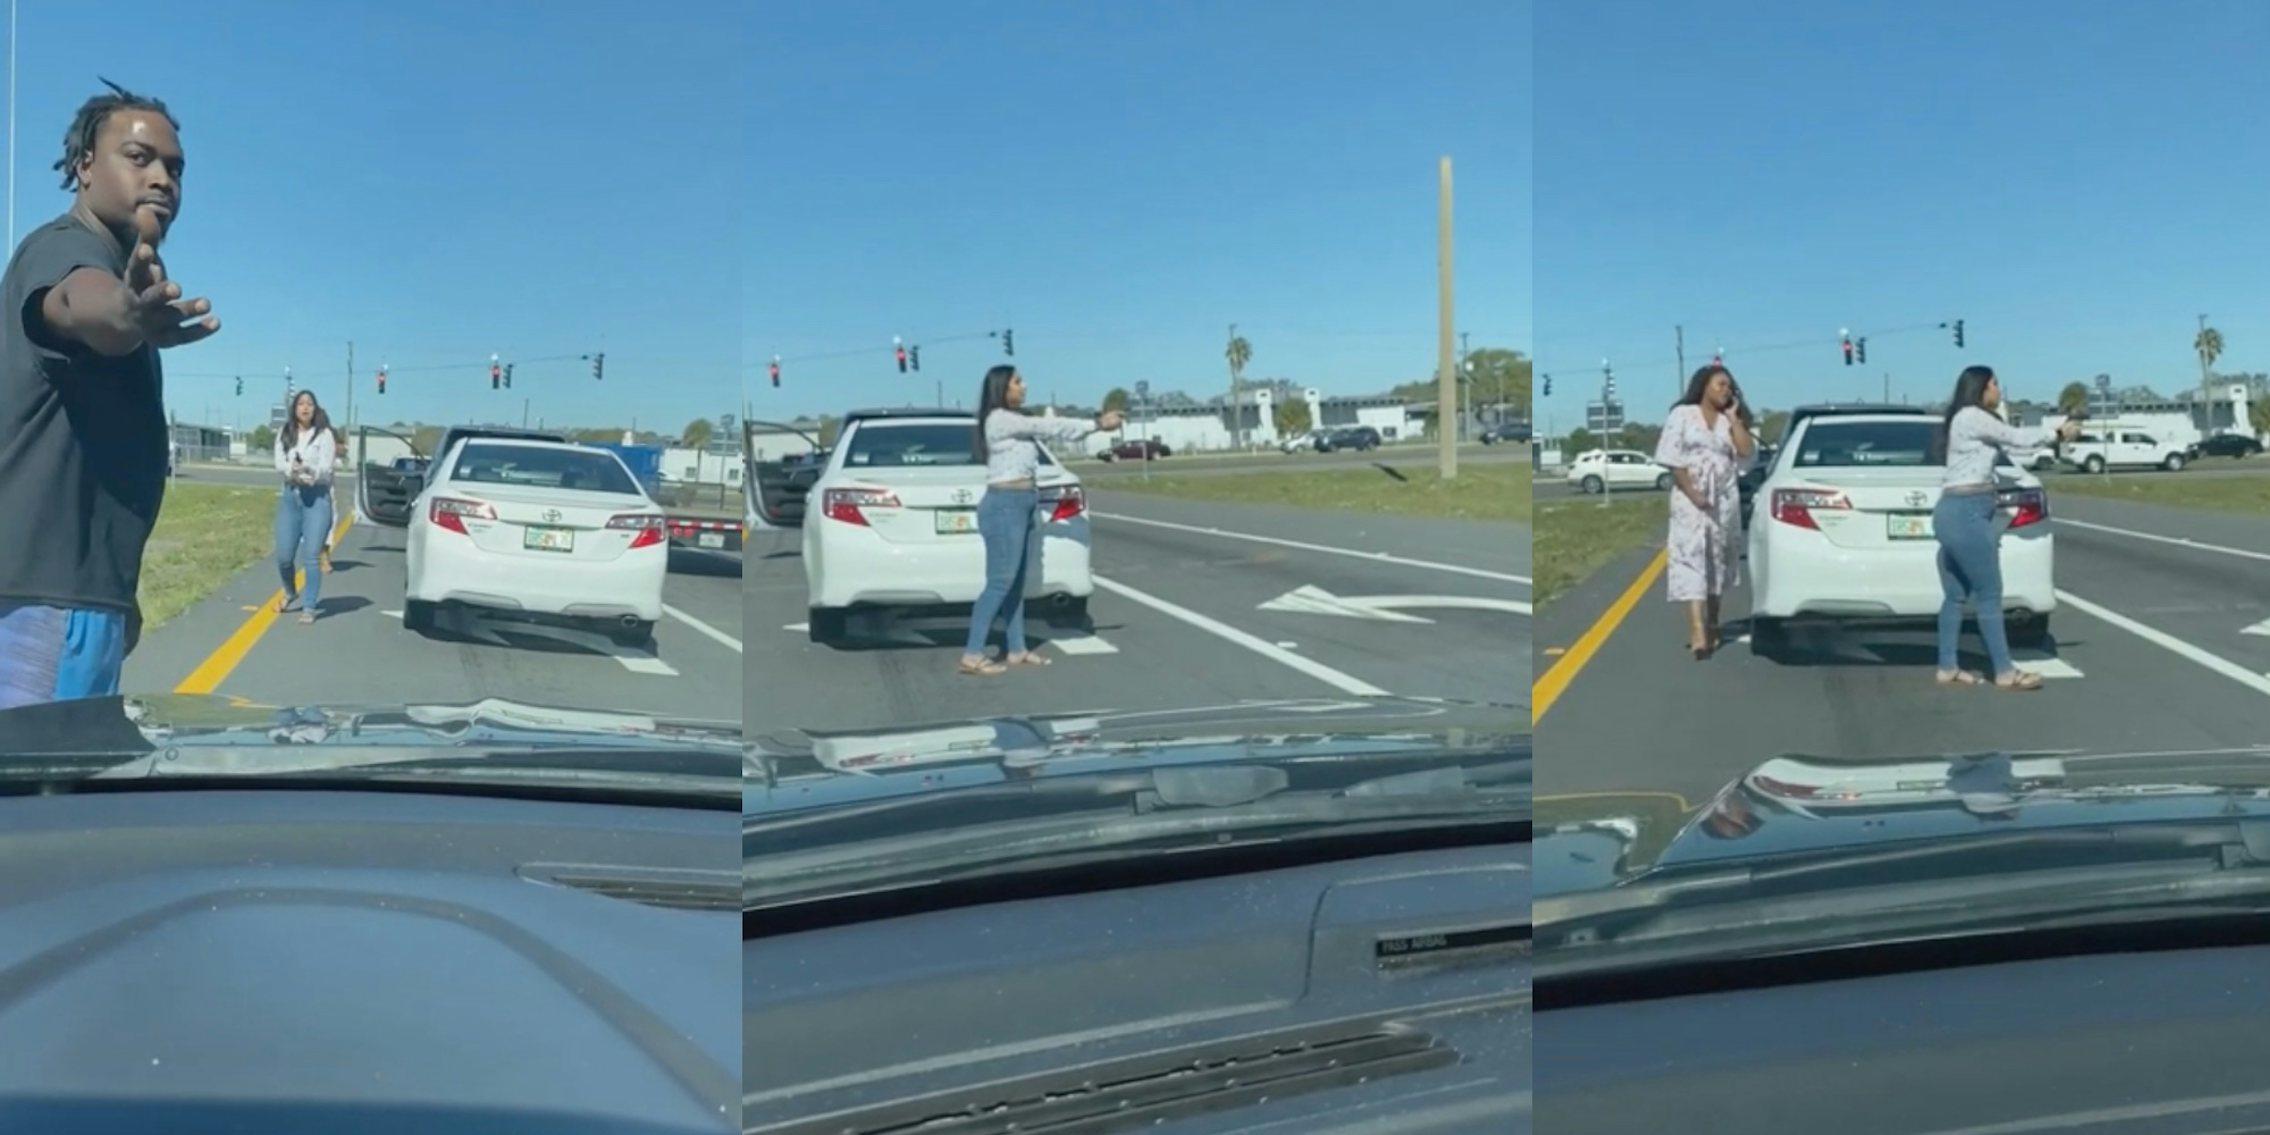 Florida 'Karen' pulls gun on Black man following traffic incident.